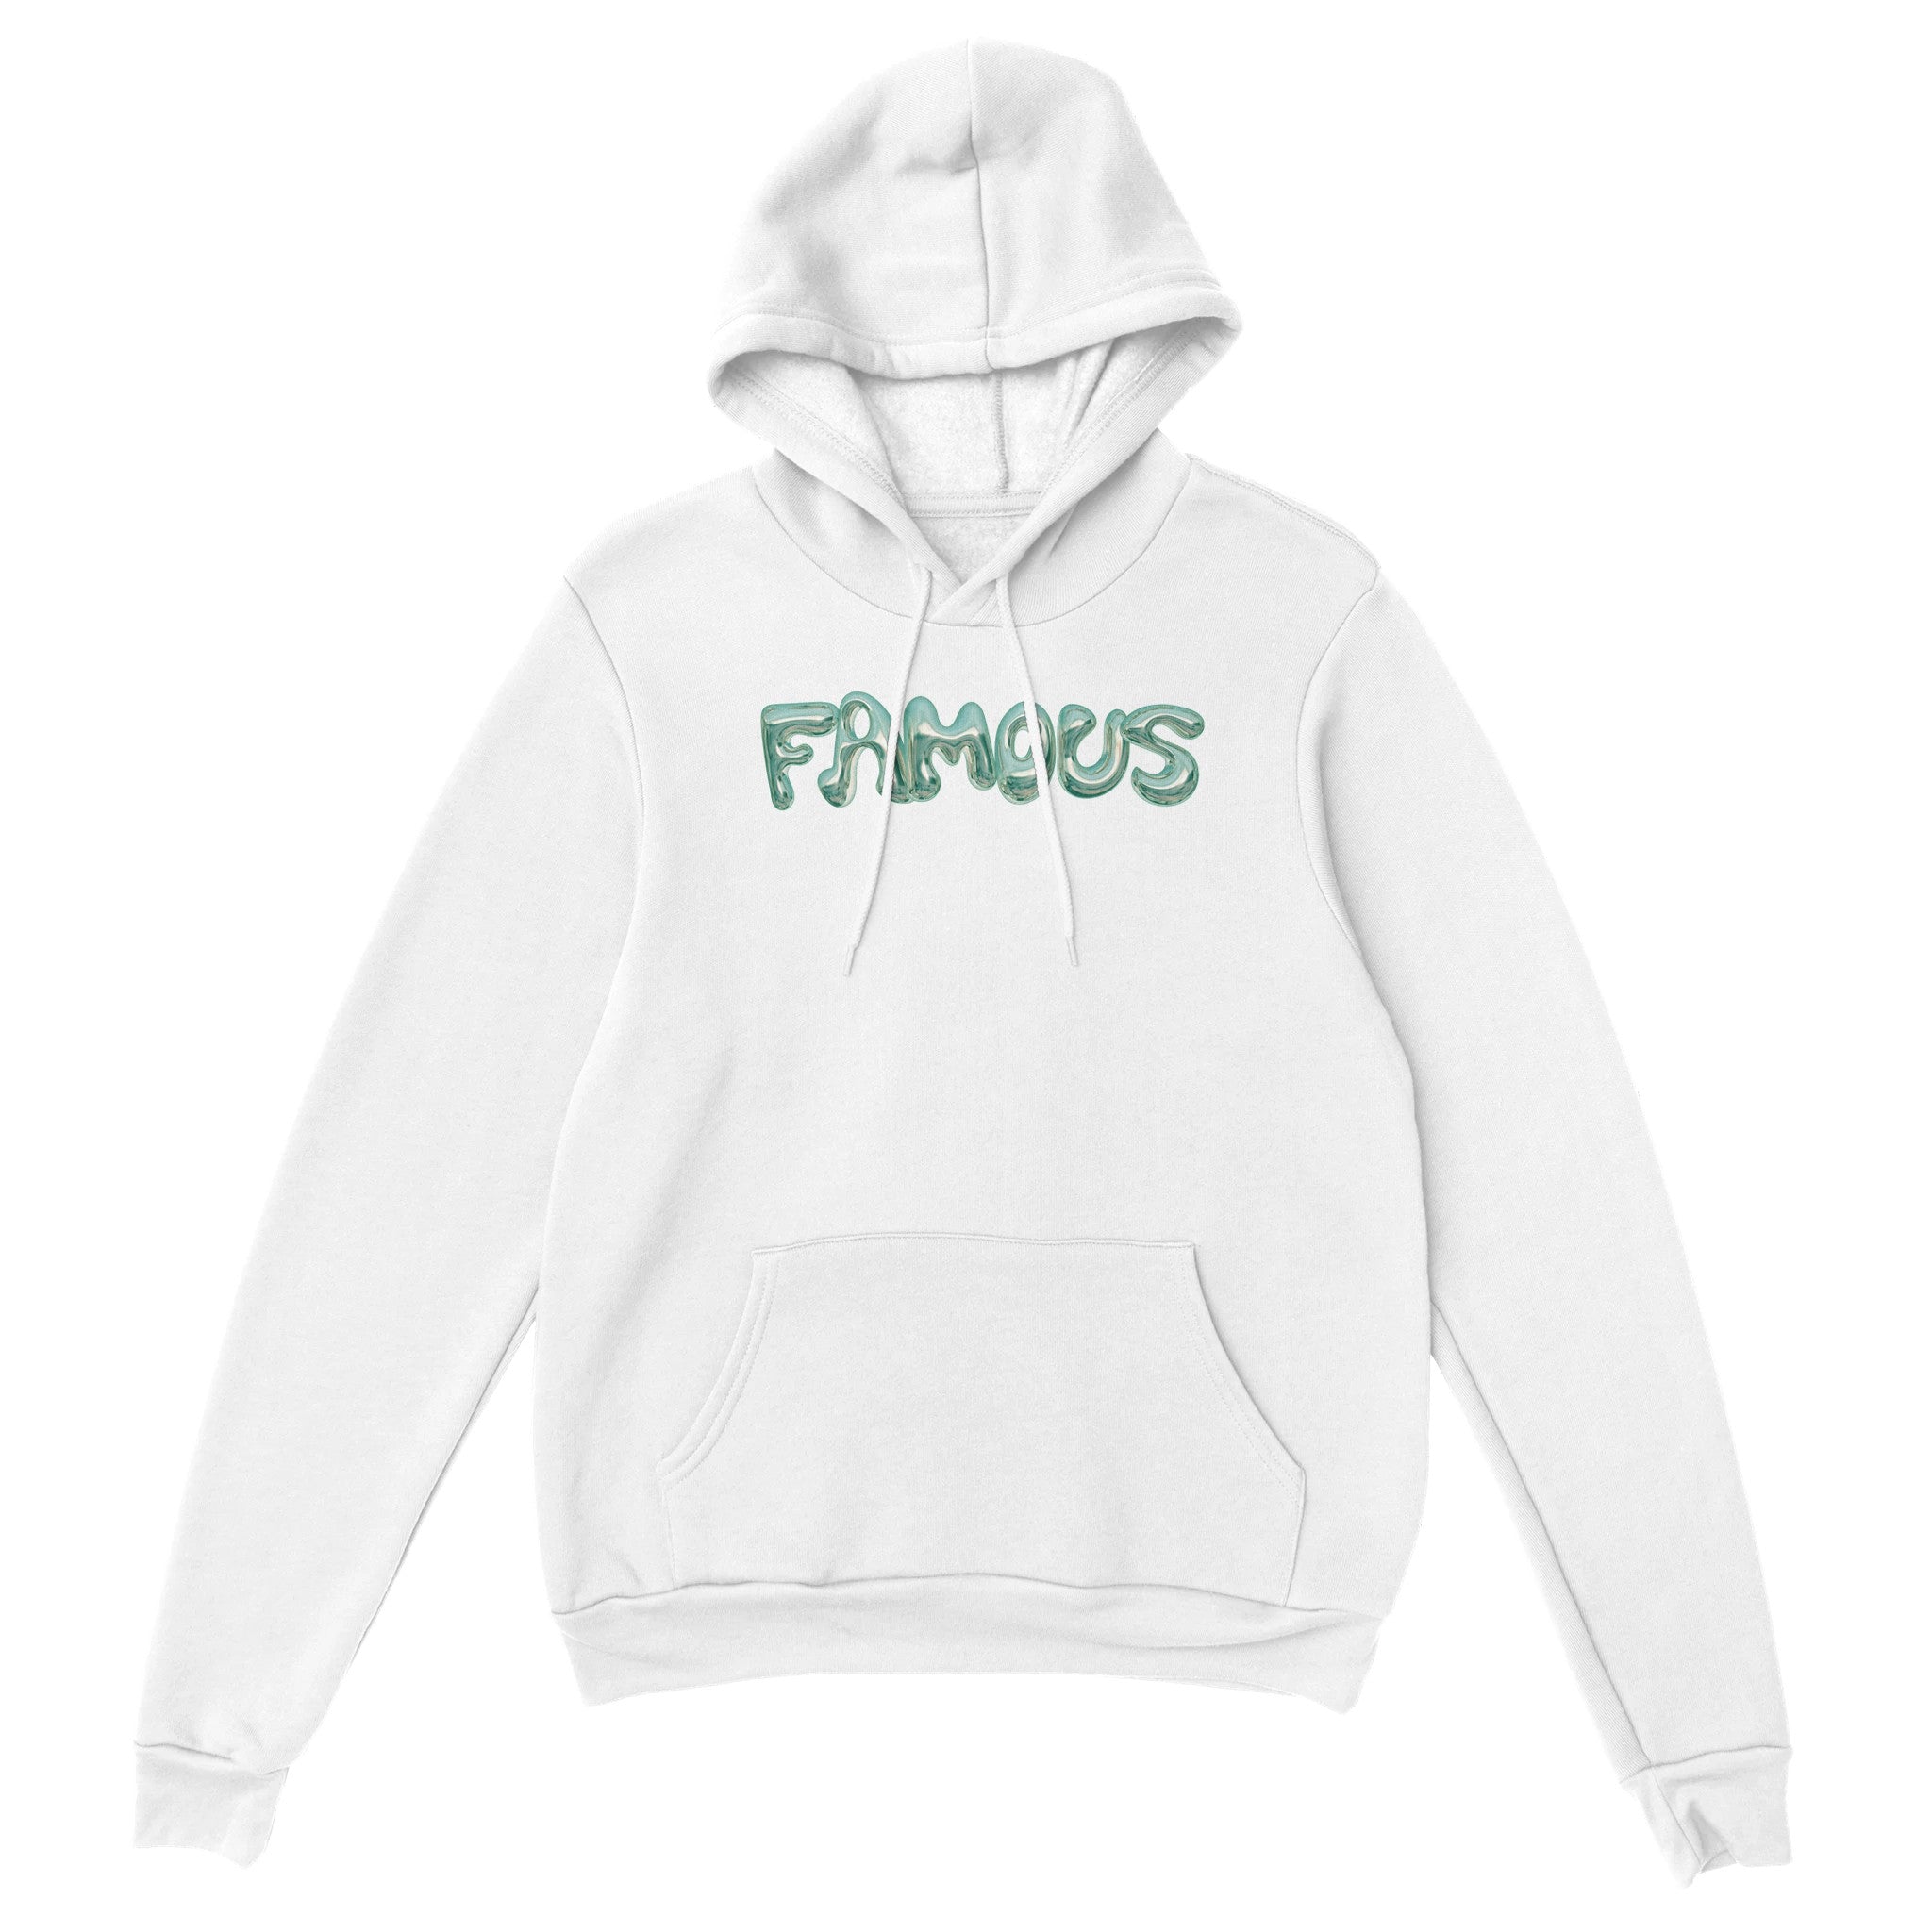 'Famous' hoodie - In Print We Trust